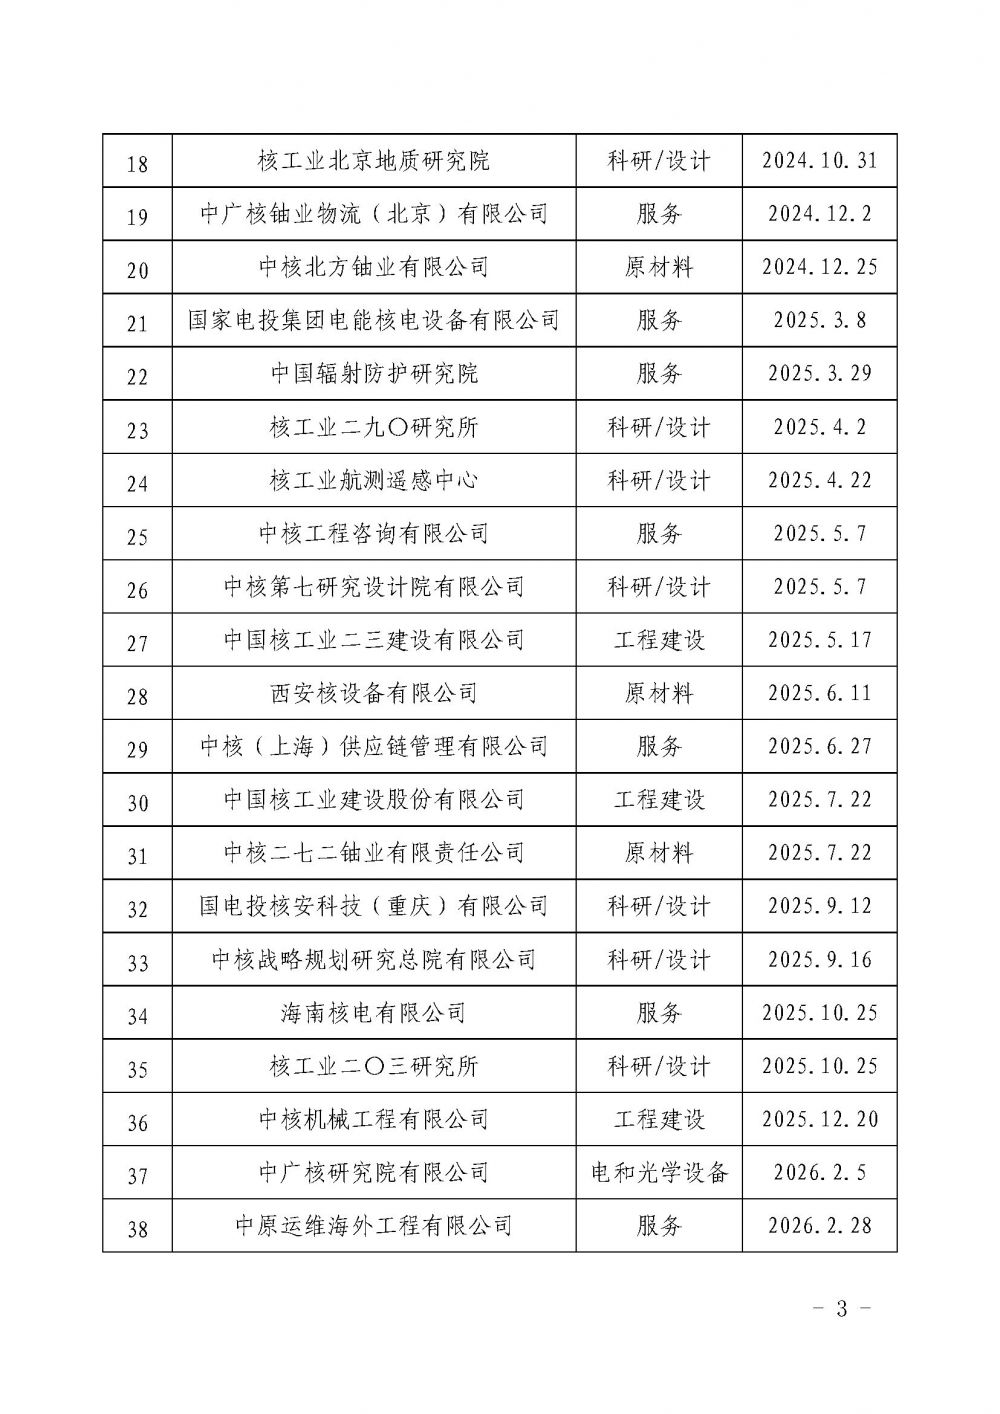 关于发布中国核能行业协会核能行业第十五批合格供应商名录的公告_页面_3.jpg